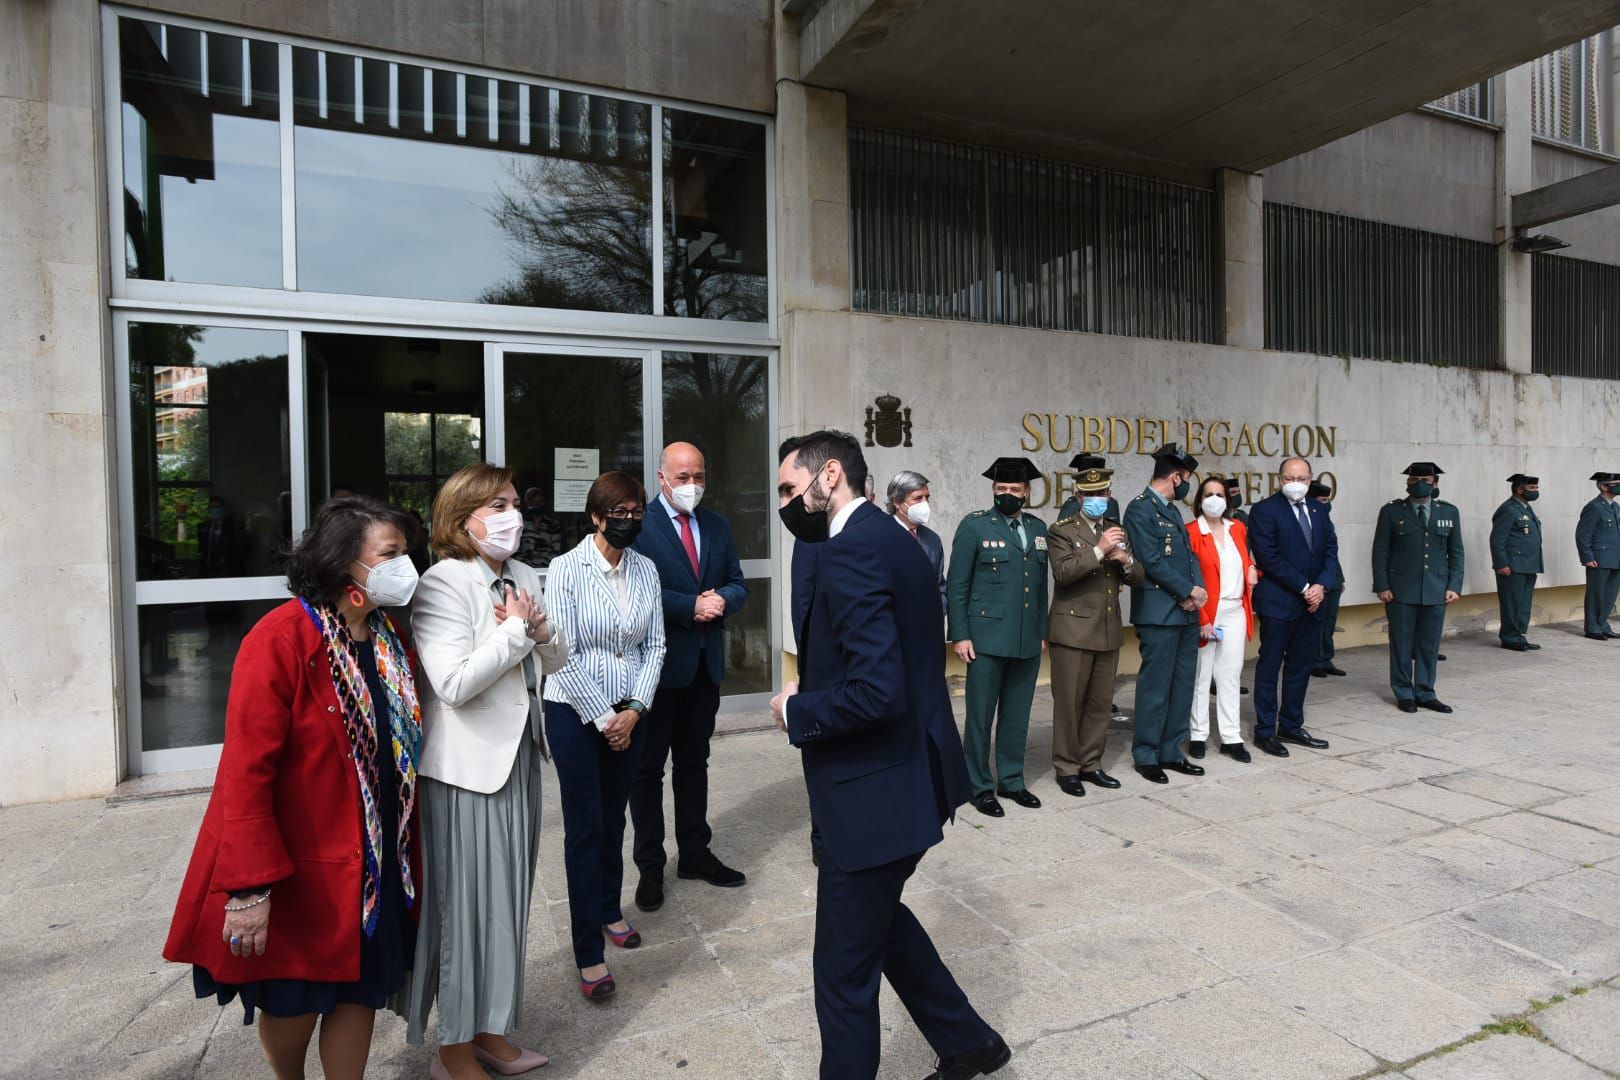 La Guardia Civil de Córdoba presenta su carta de servicios.